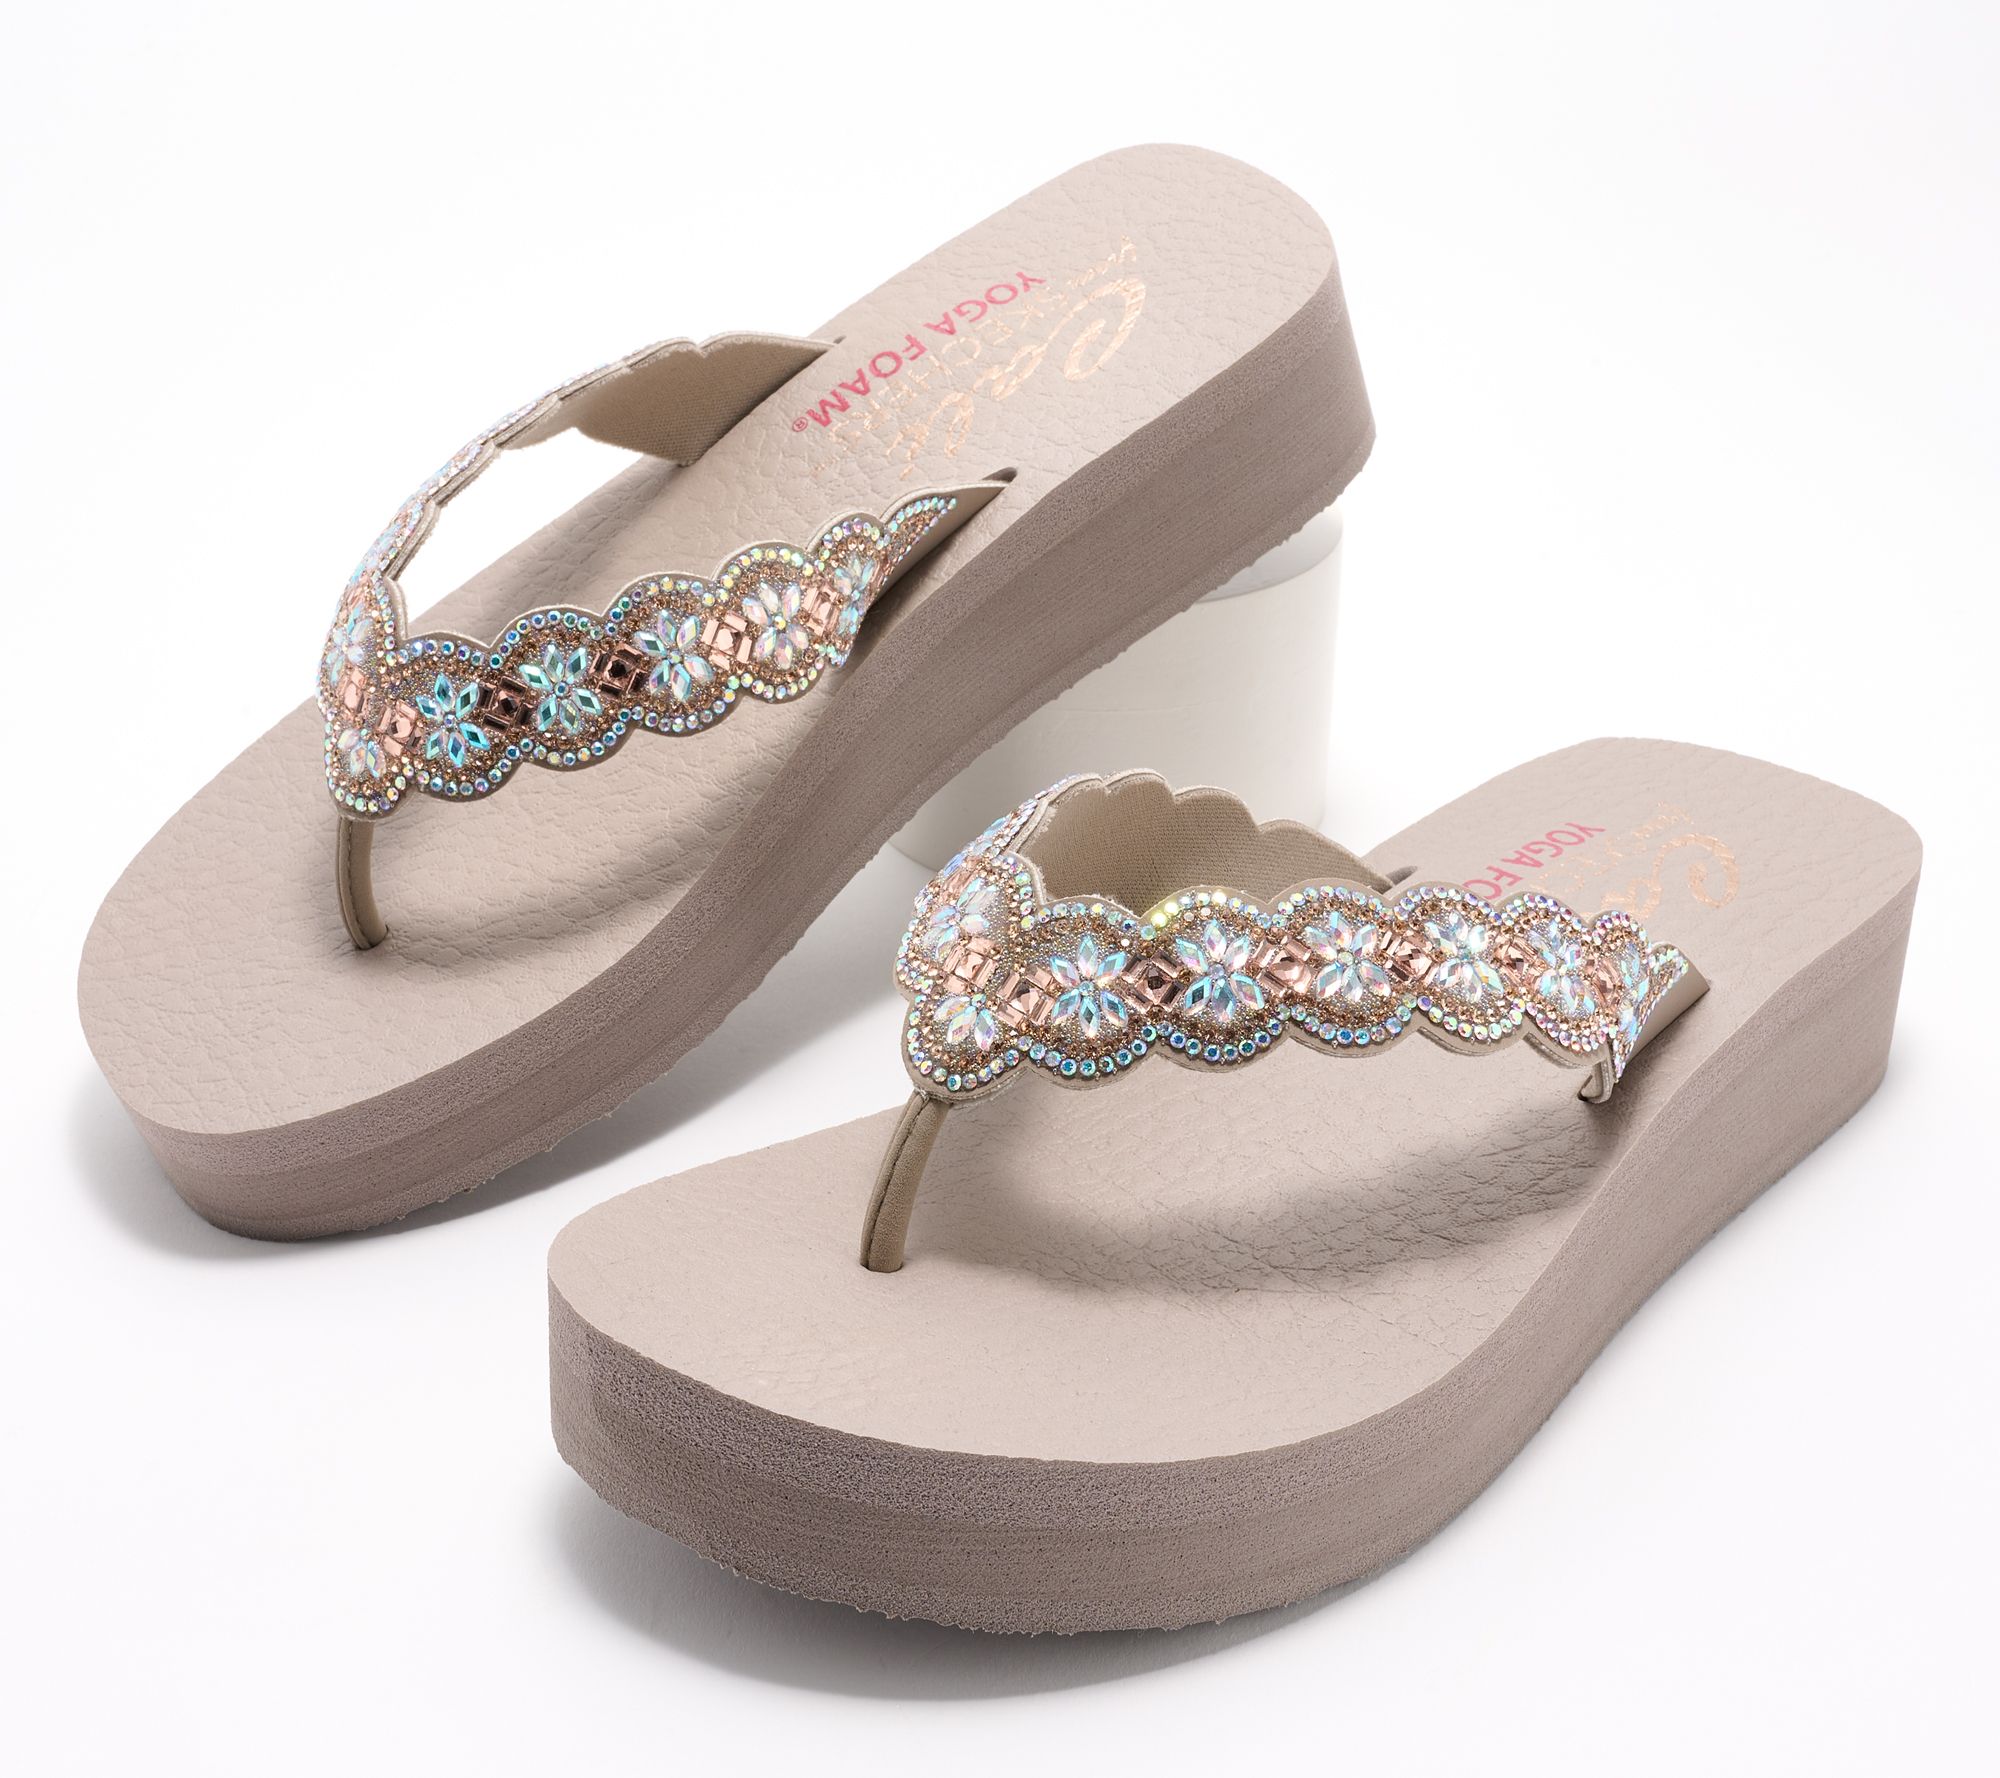 Skechers Vinyasa Floral Embellished Thong Sandals - Happy Spring - QVC.com